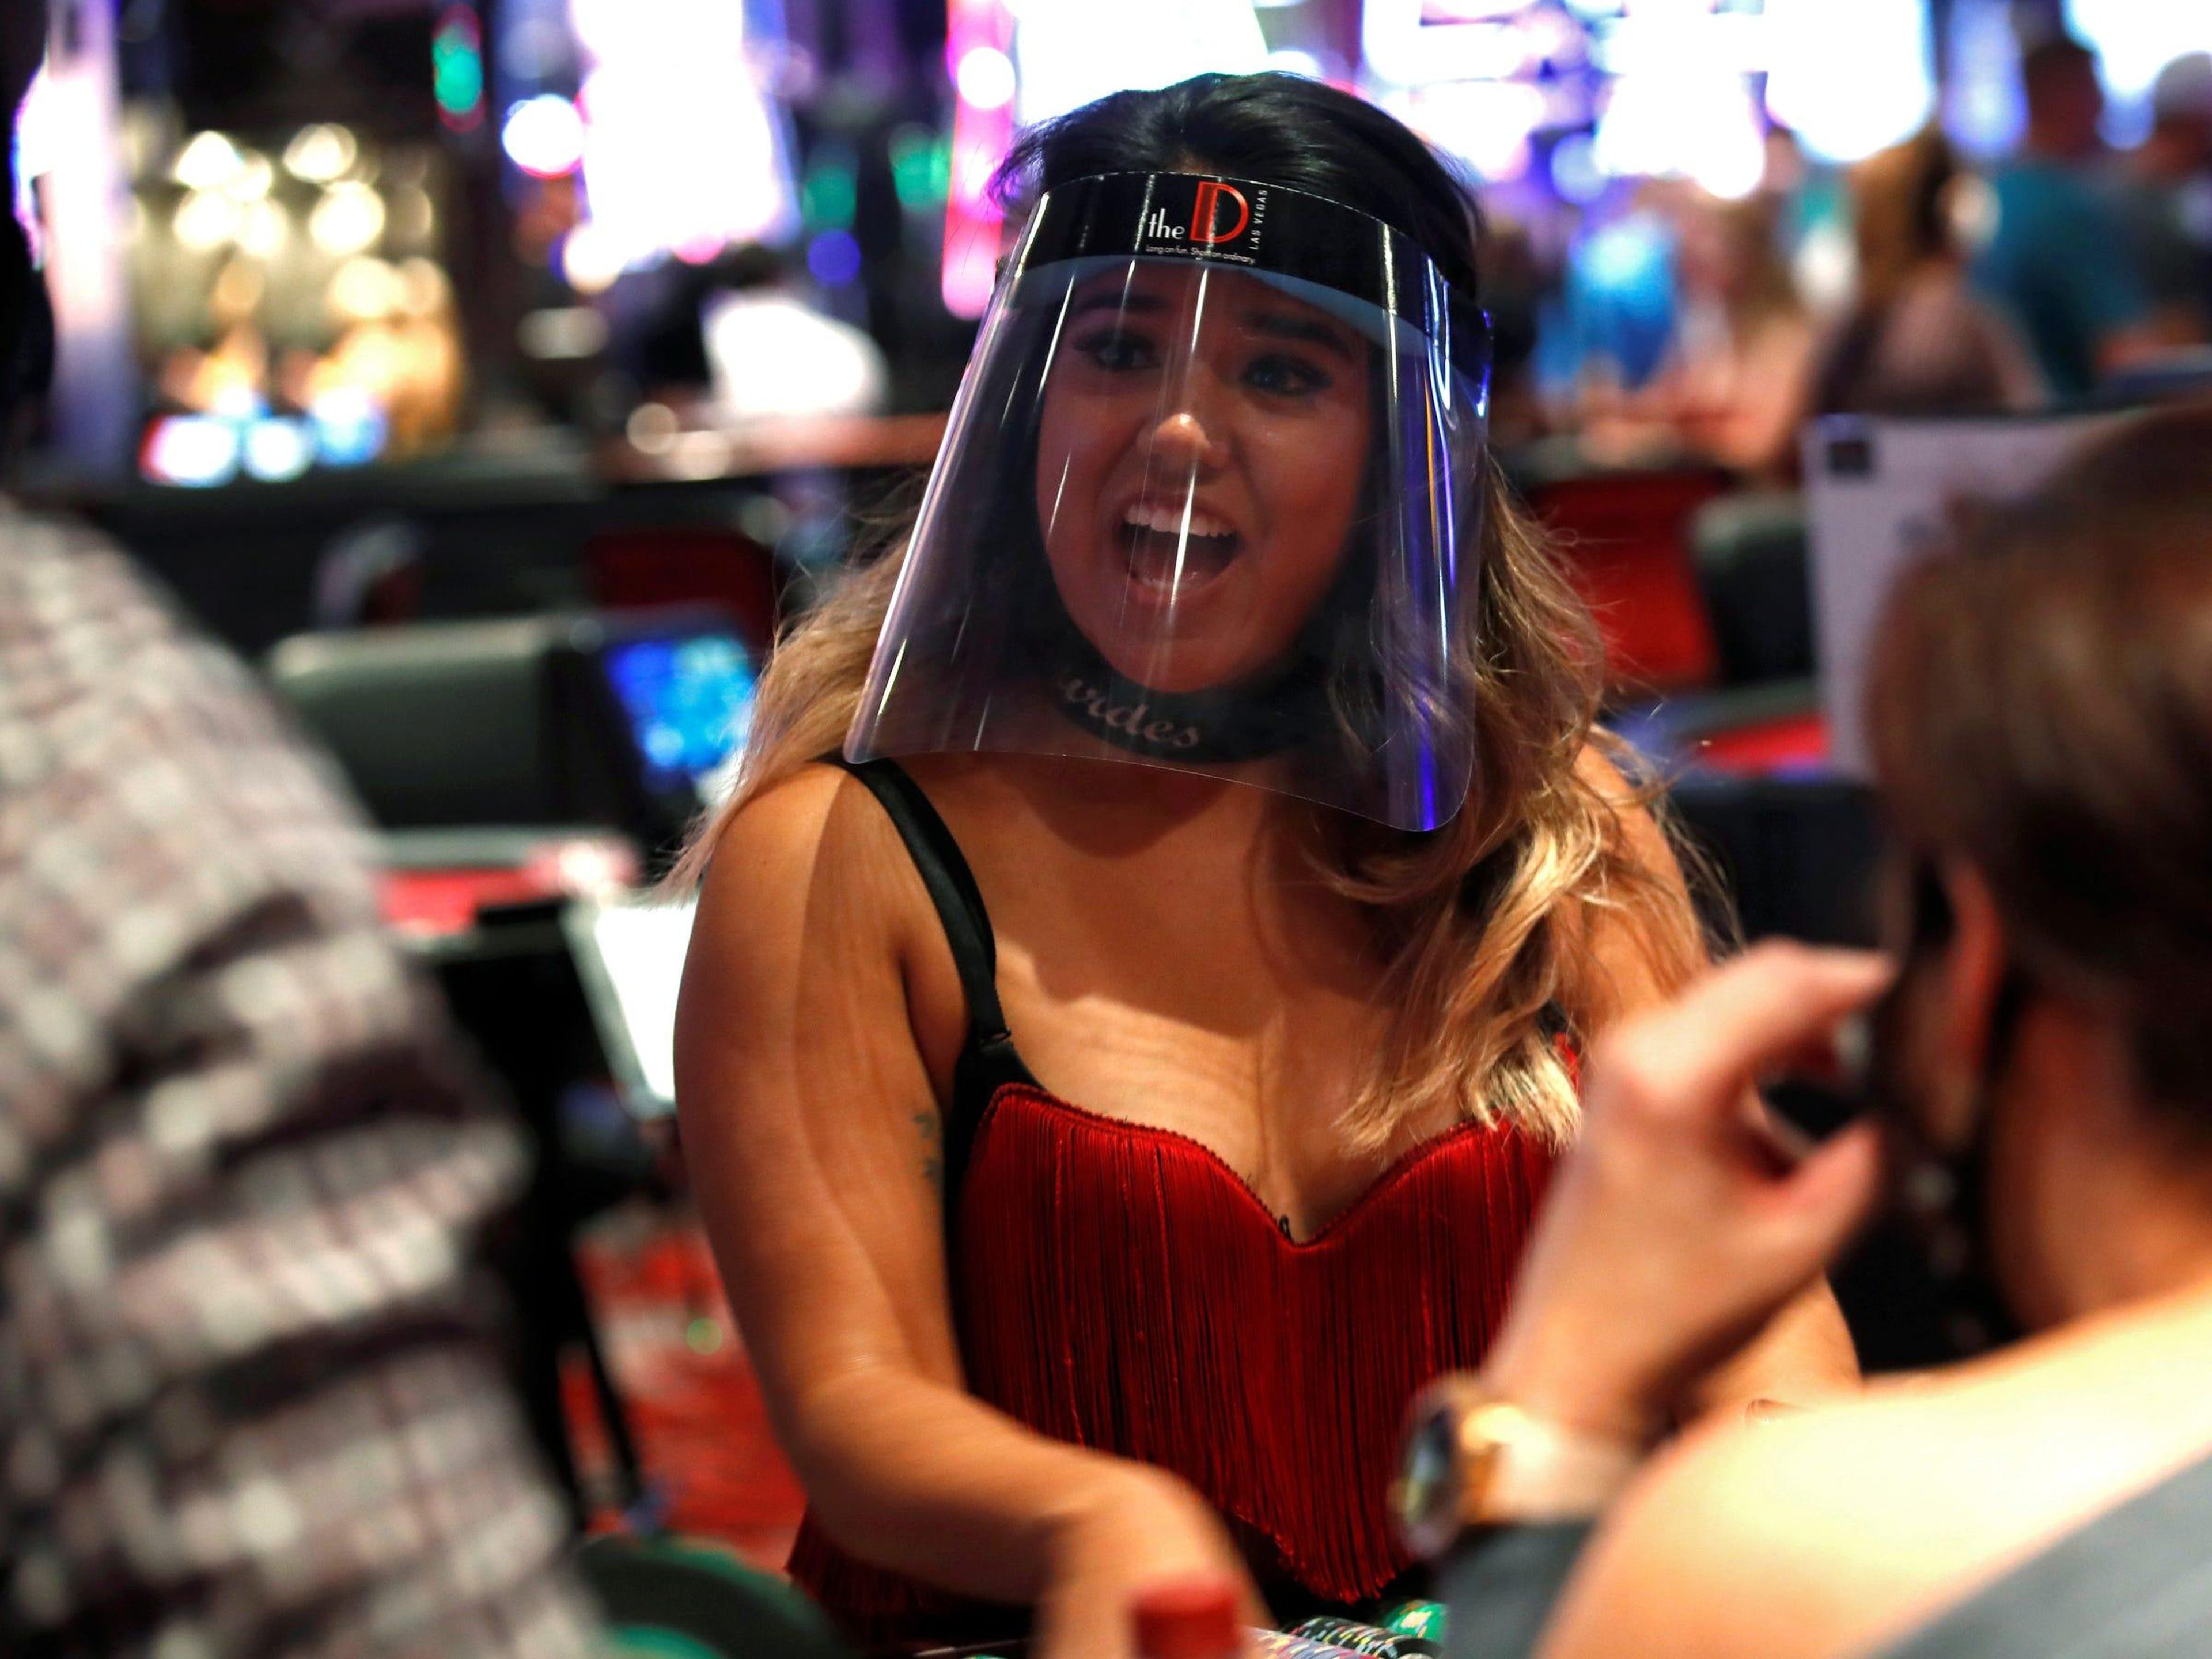 Una crupier de blackjack usa un protector facial en The D Las Vegas el 4 de junio de 2020.